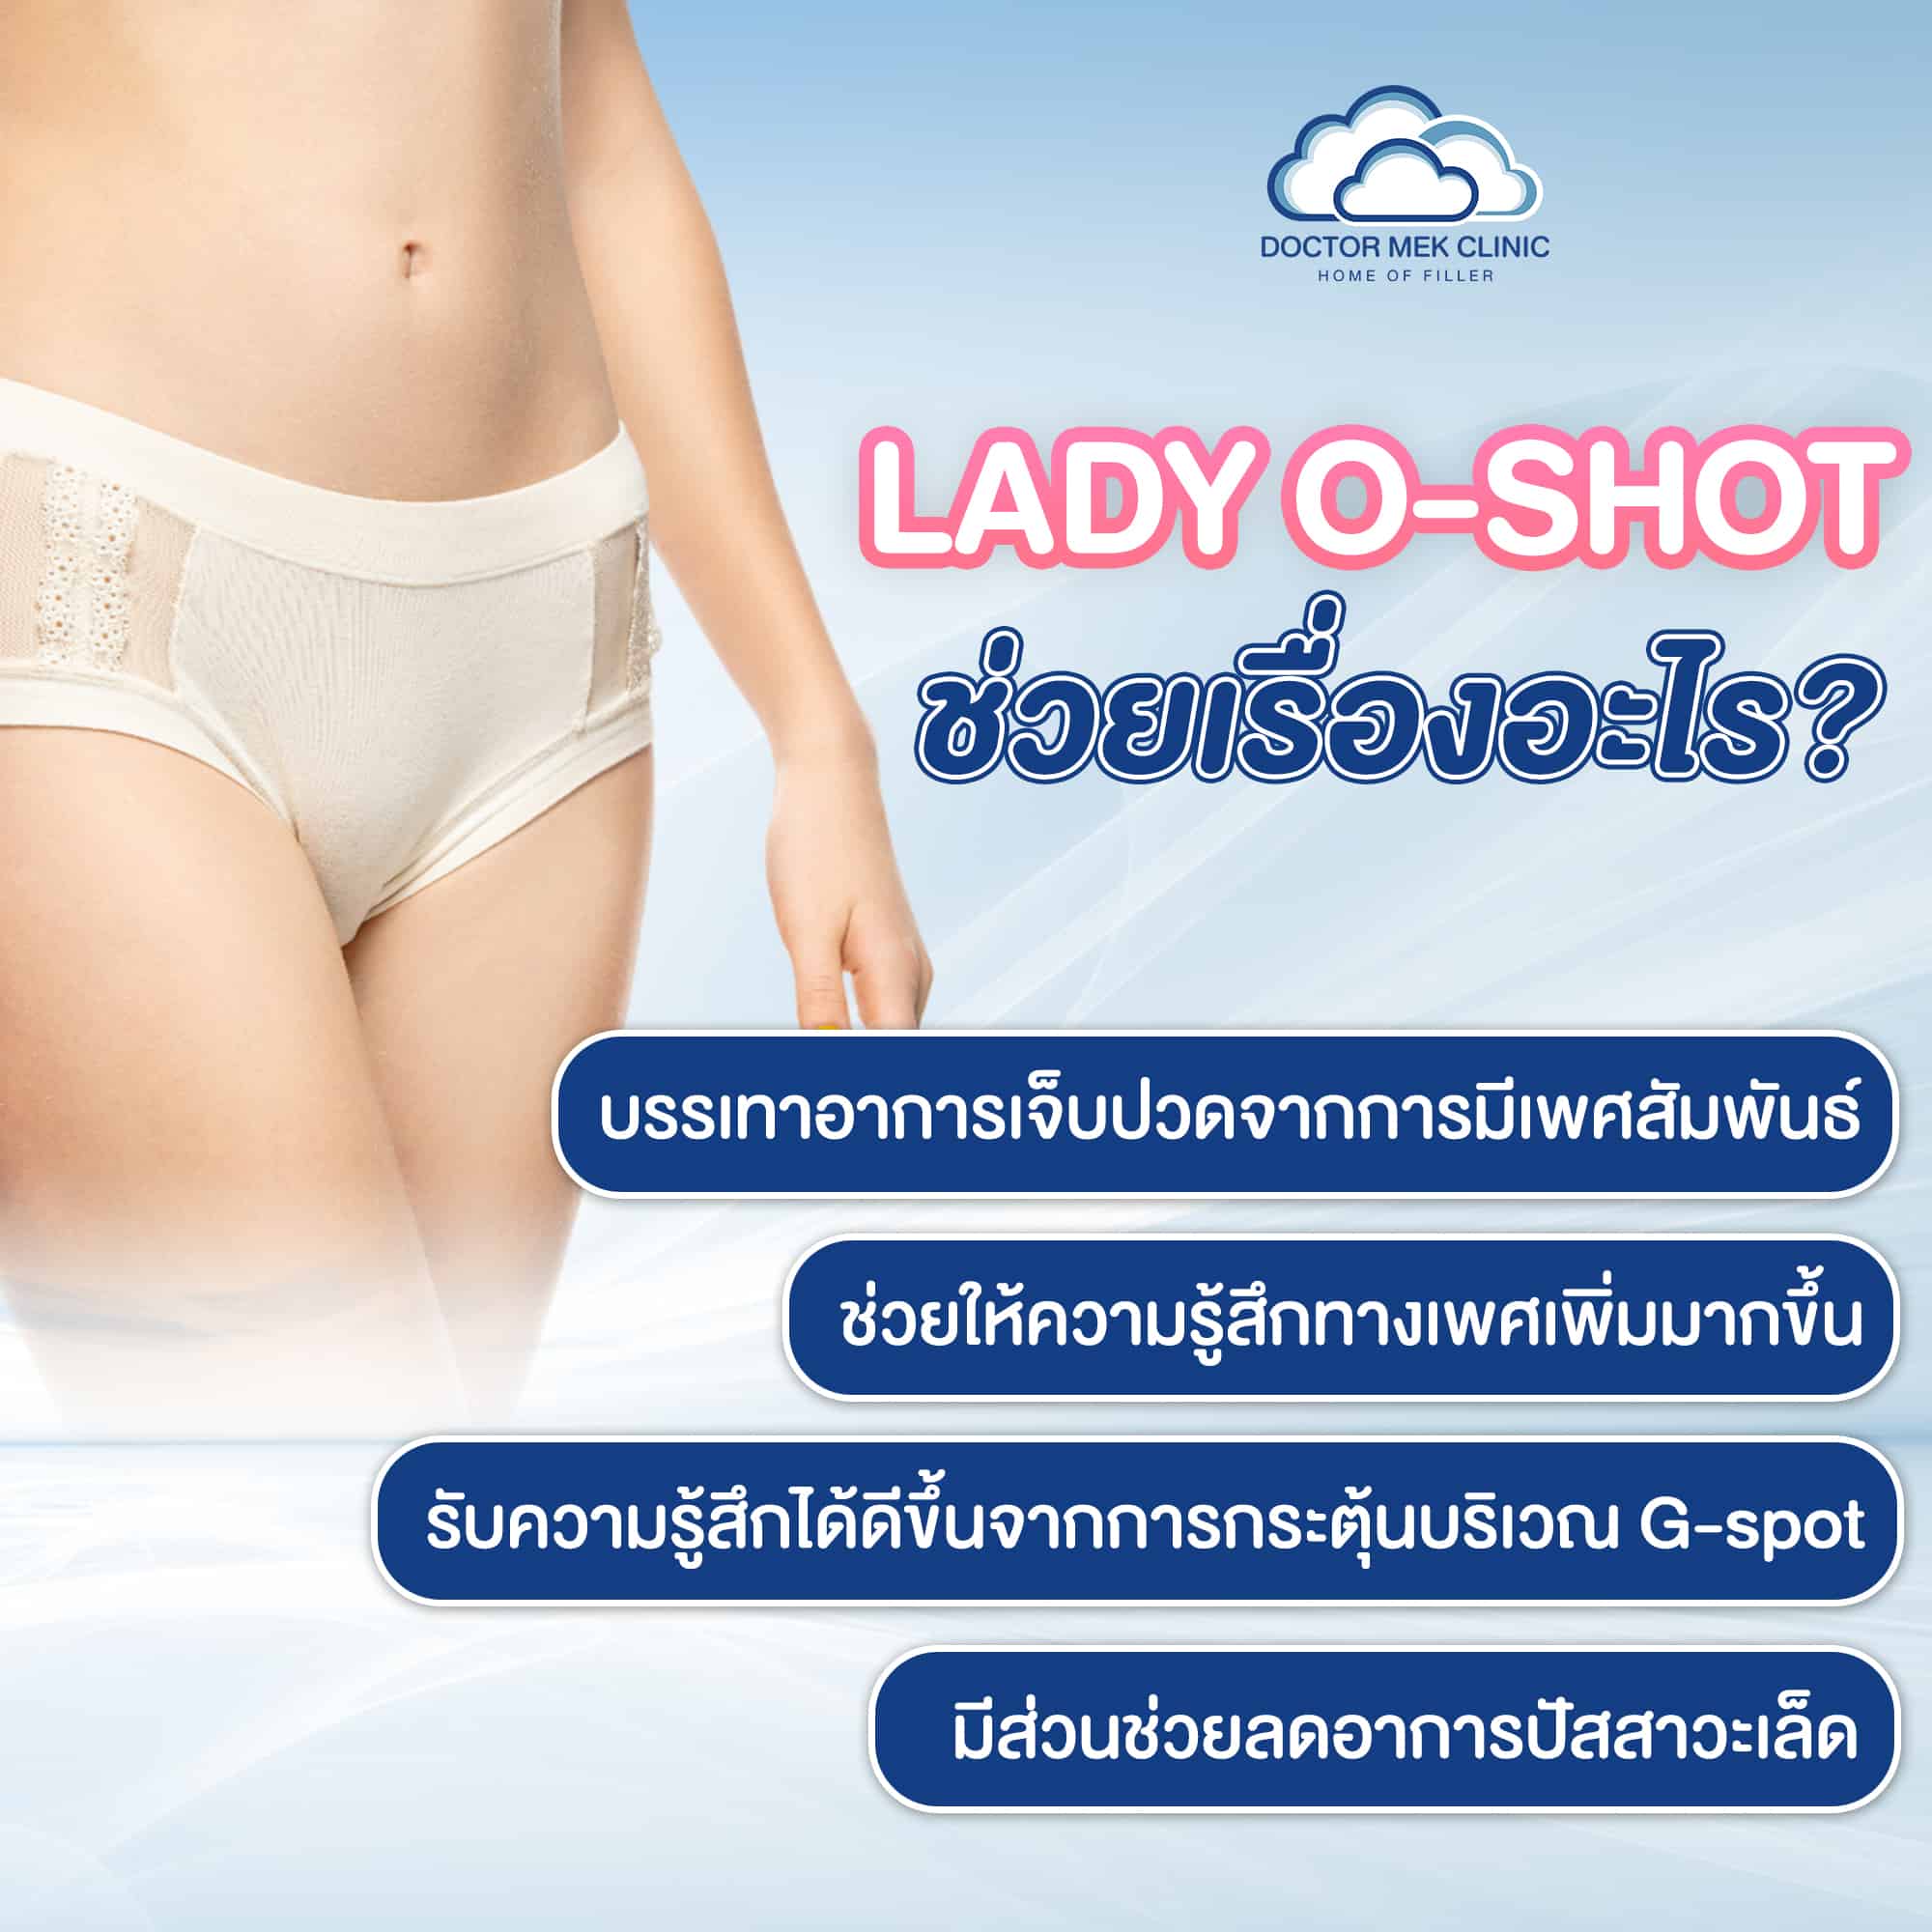 Lady O-shot ช่วยเรื่องอะไร